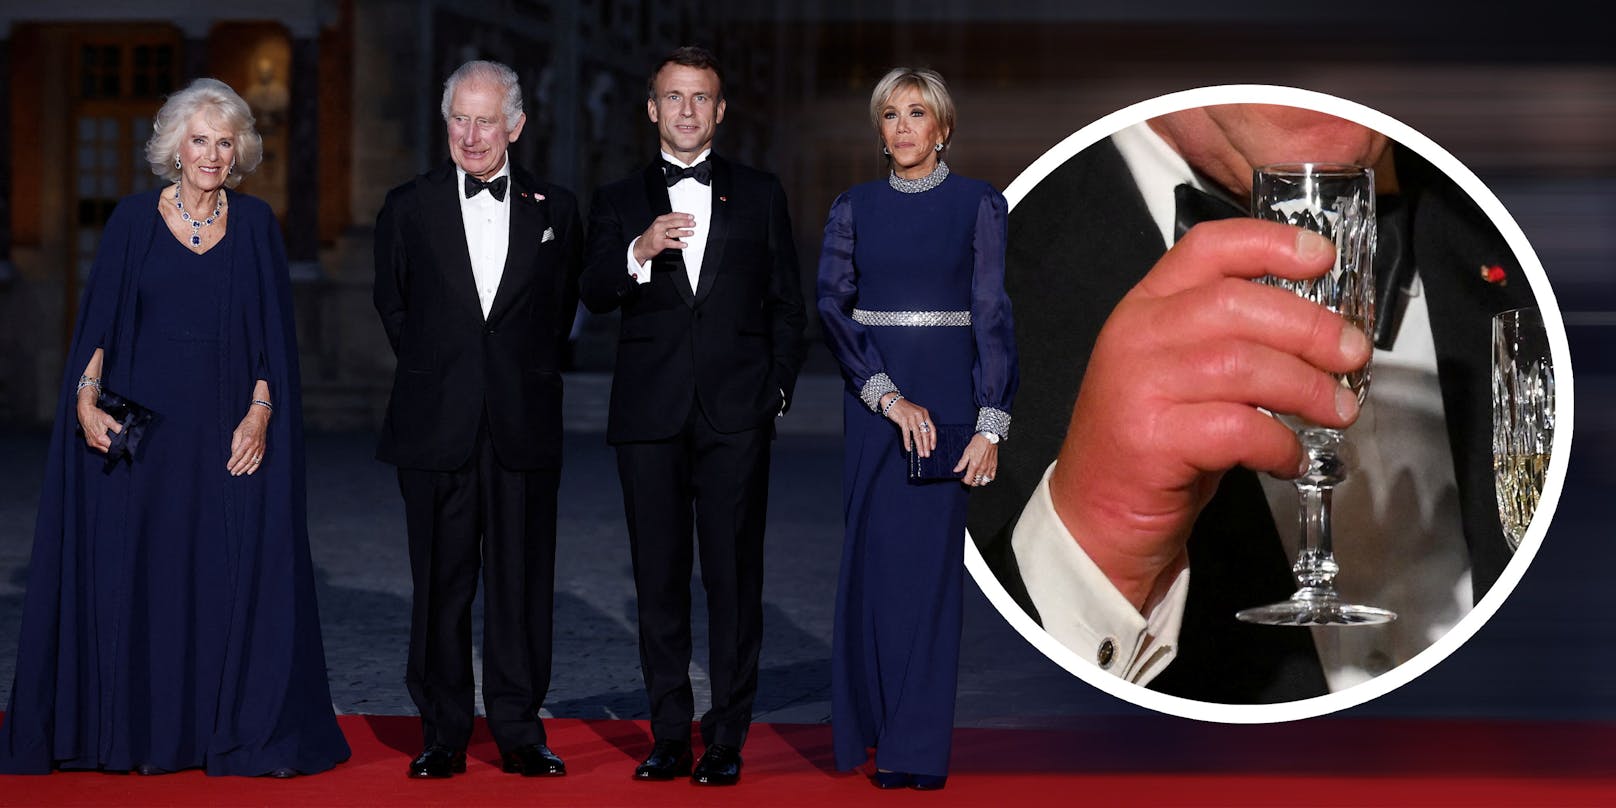 Charles trifft Macron – alle schauen auf seine Hände